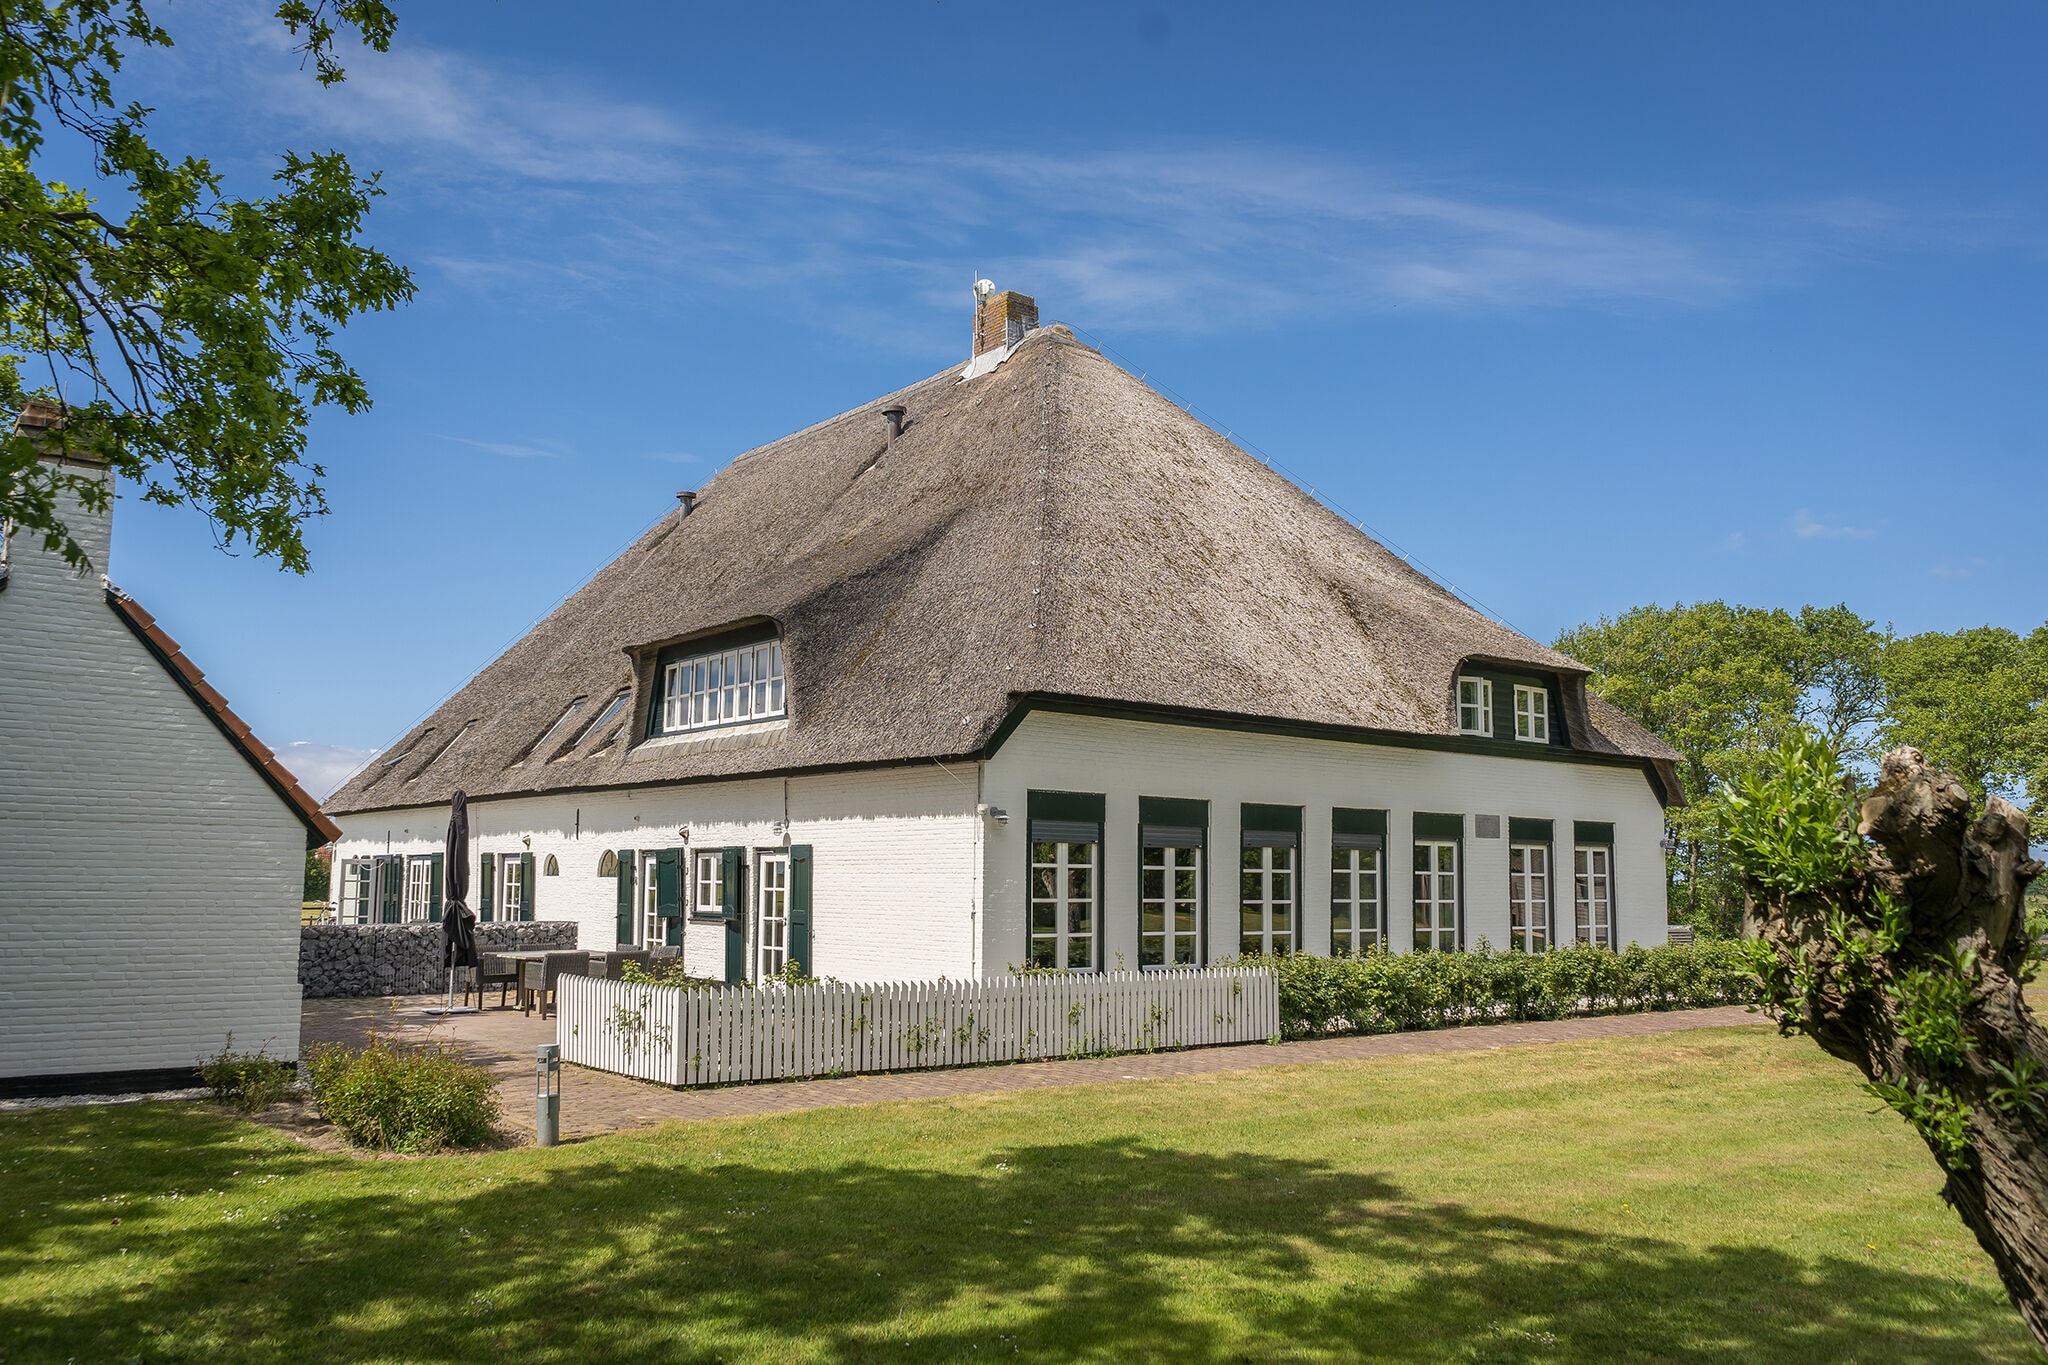 Apartment in einem Bauernhaus in De Cocksdorp auf der Insel Texel